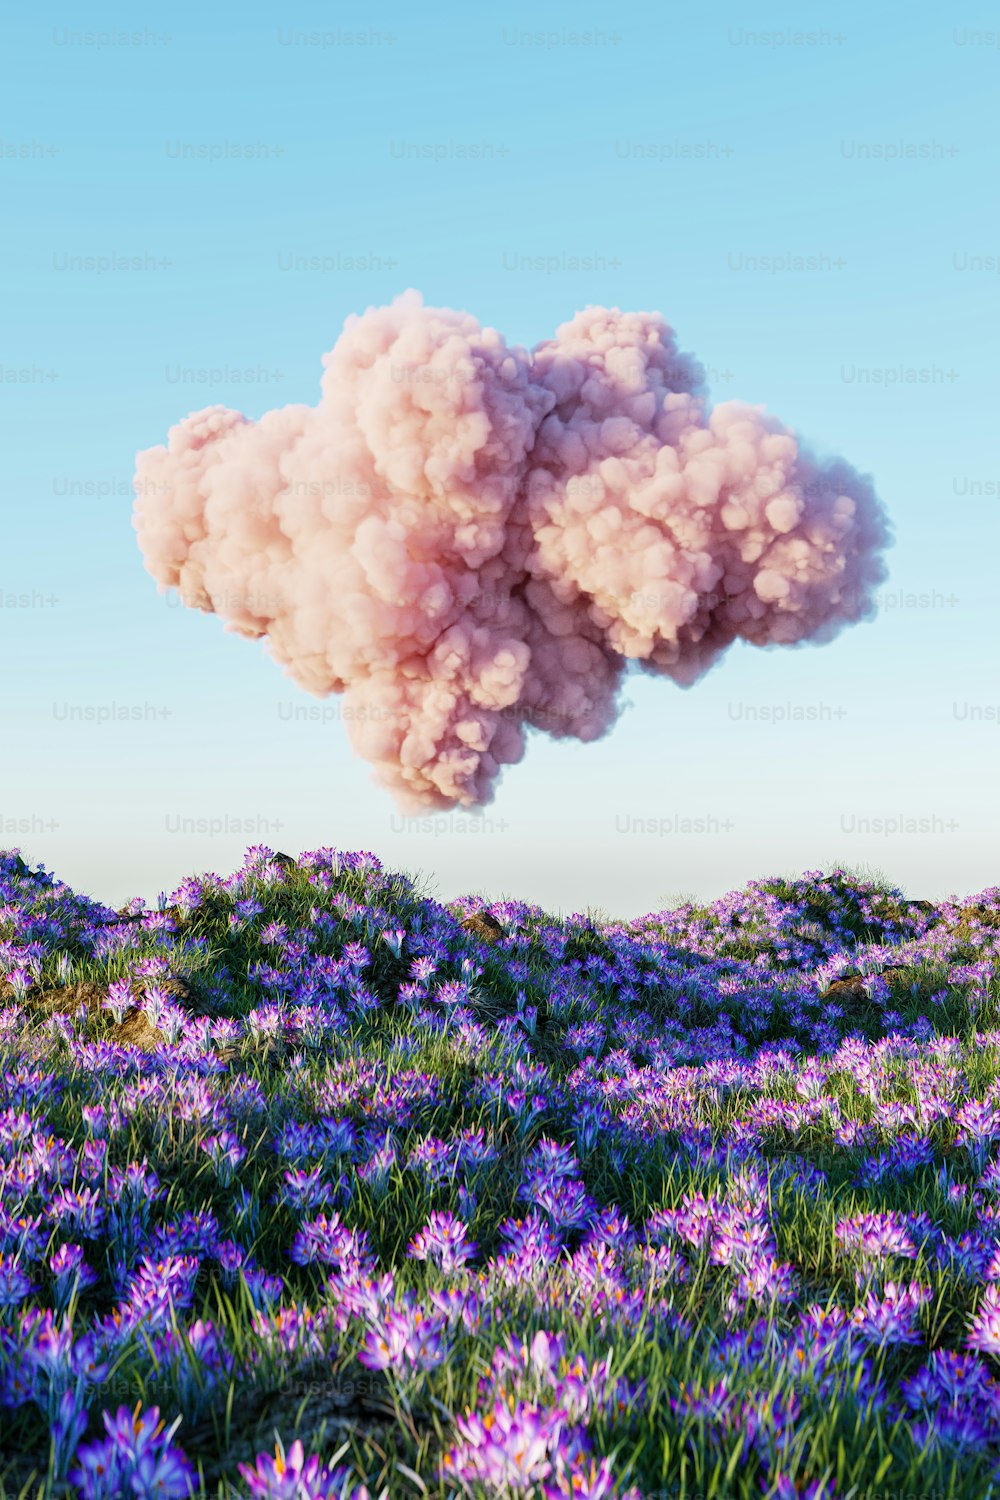 연기 구름이 보라색 꽃밭 위에 떠 있습니다.